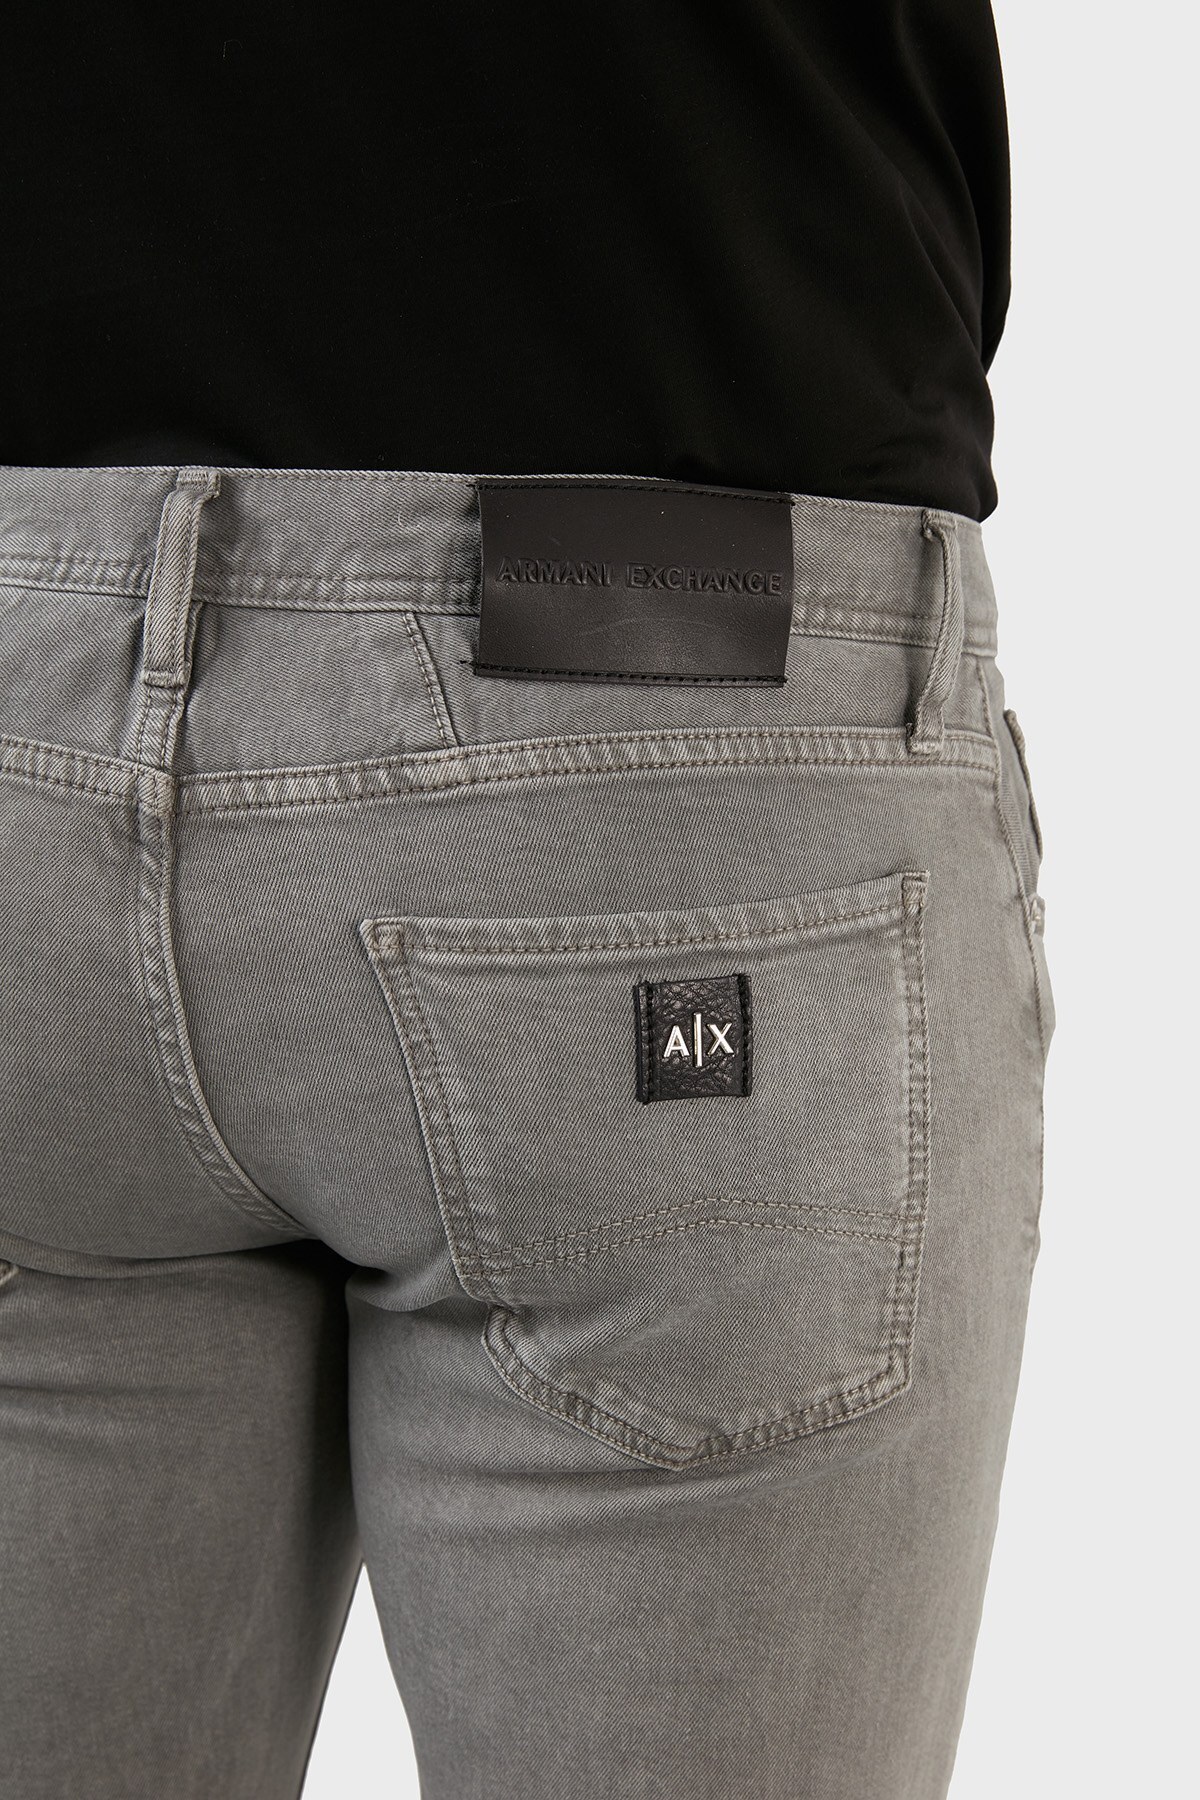 Armani Exchange Pamuklu Normal Bel Slim Fit Dar Paça Jeans Erkek Kot Pantolon 3LZJ13 Z1D7Z 1972 GRİ-SİYAH